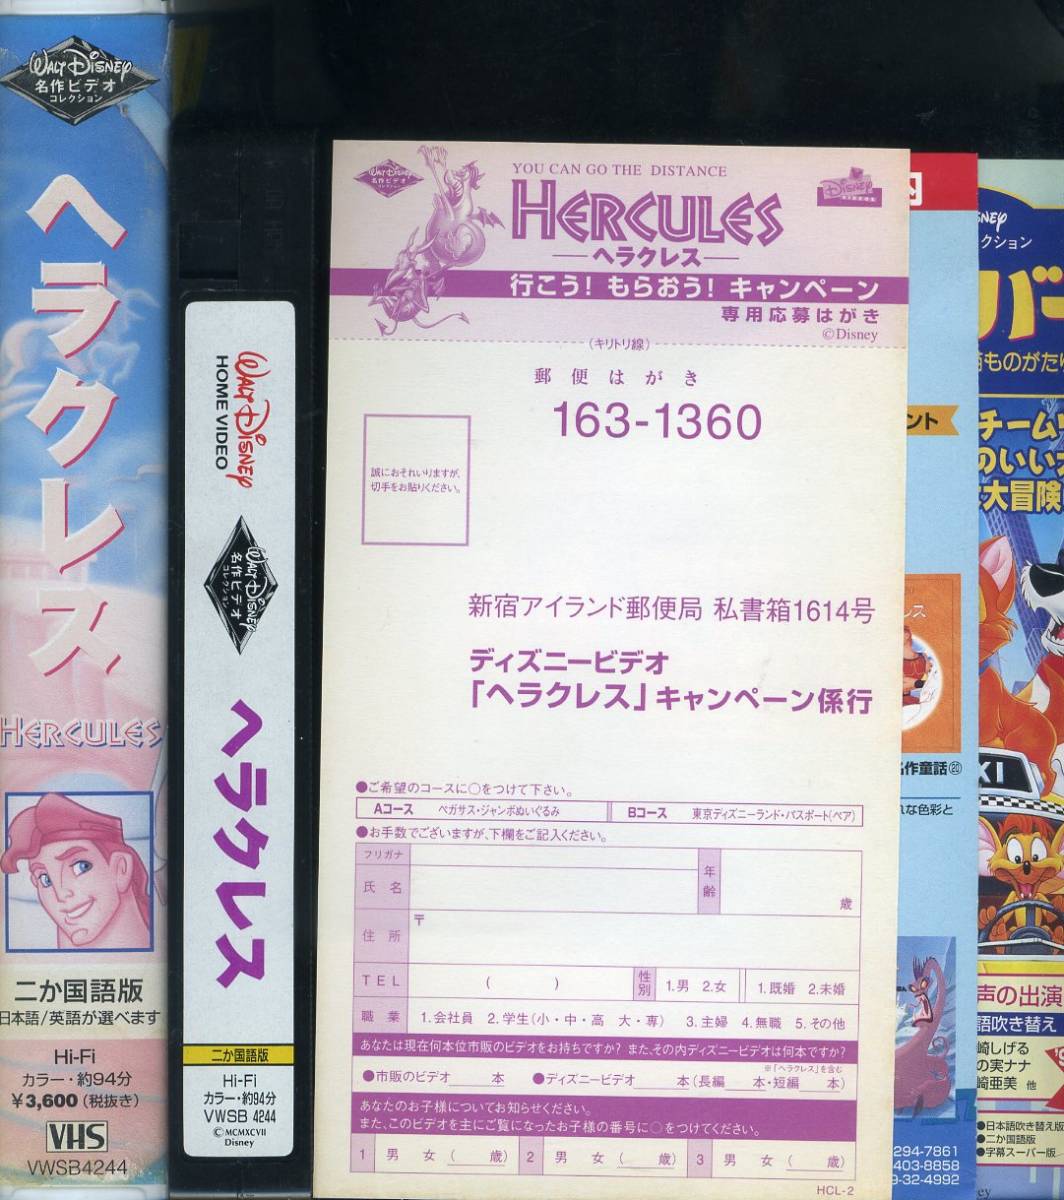  быстрое решение ( включение в покупку приветствуется )VHS Hercules 2 государственных языков версия рекламная листовка * открытка есть Disney аниме видео * прочее большое количество выставляется -m839